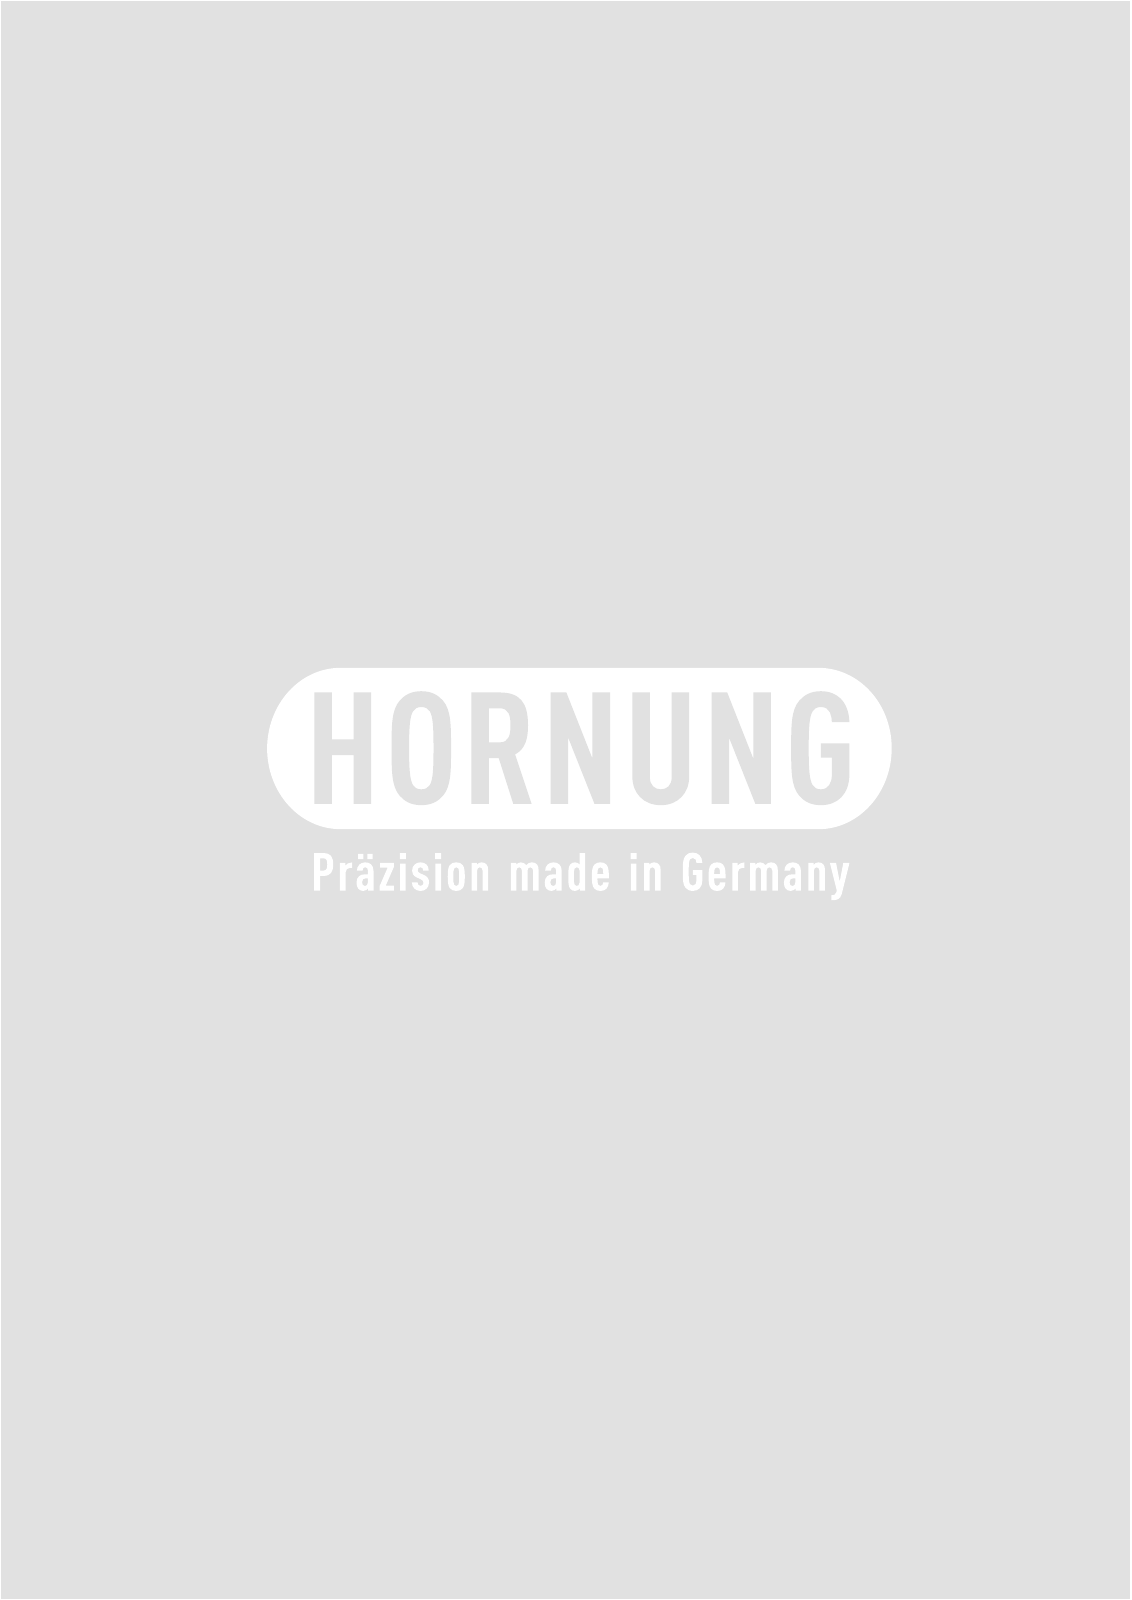 Vorschau Katalog Armaturen für Reinstgase - Hornung GmbH Seite 106